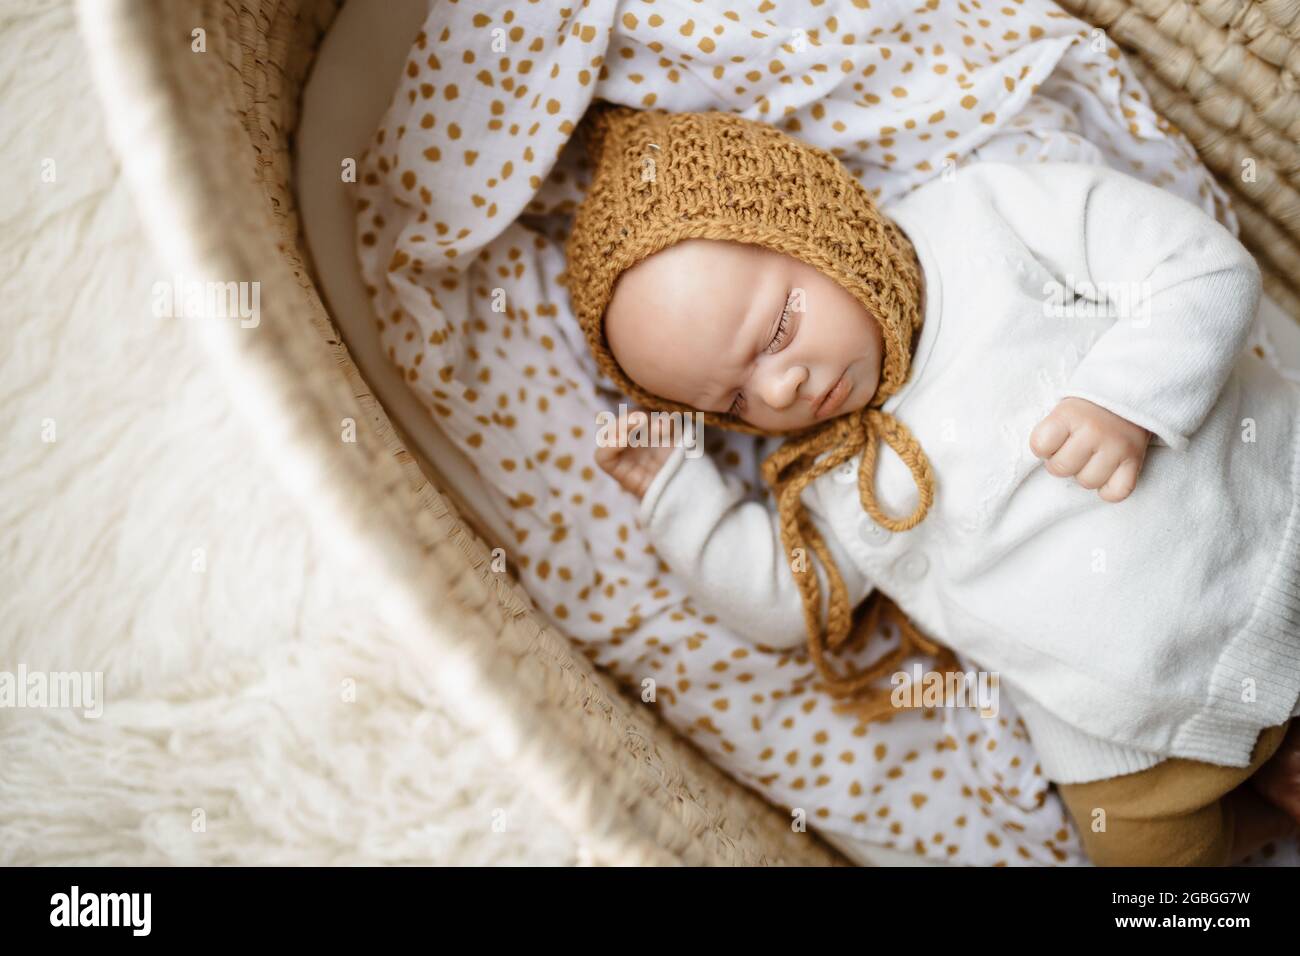 Ein neugeborenes Baby-Puppenspielzeug, gekleidet in einen senffarbenen Hut und eine weiße Strickjacke, die in einem cremefarbenen moses-Korb-Korb-Laderett liegt Stockfoto